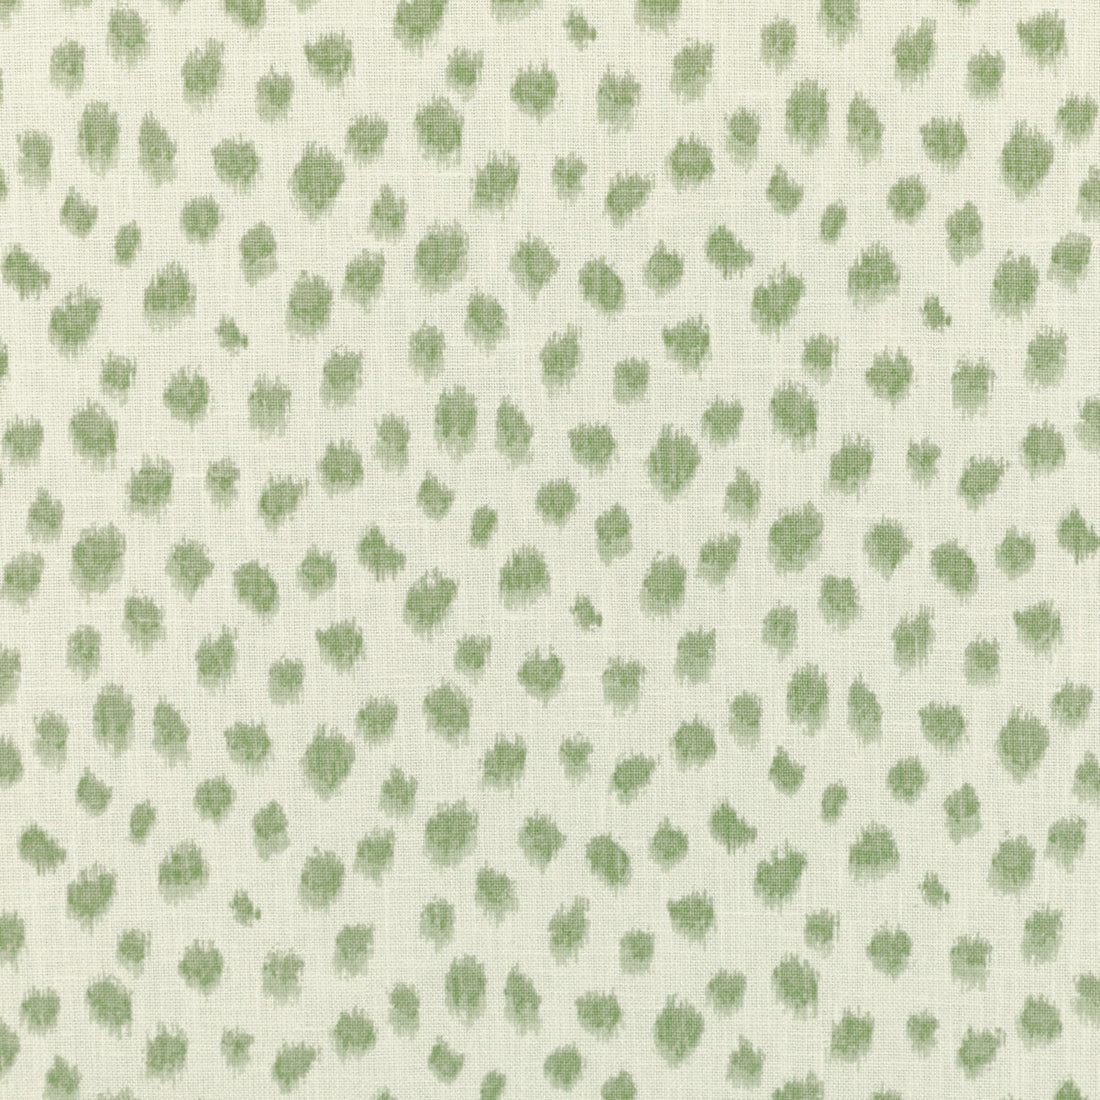 Kravet Basics fabric in jungleikat-30 color - pattern JUNGLEIKAT.30.0 - by Kravet Basics in the L&